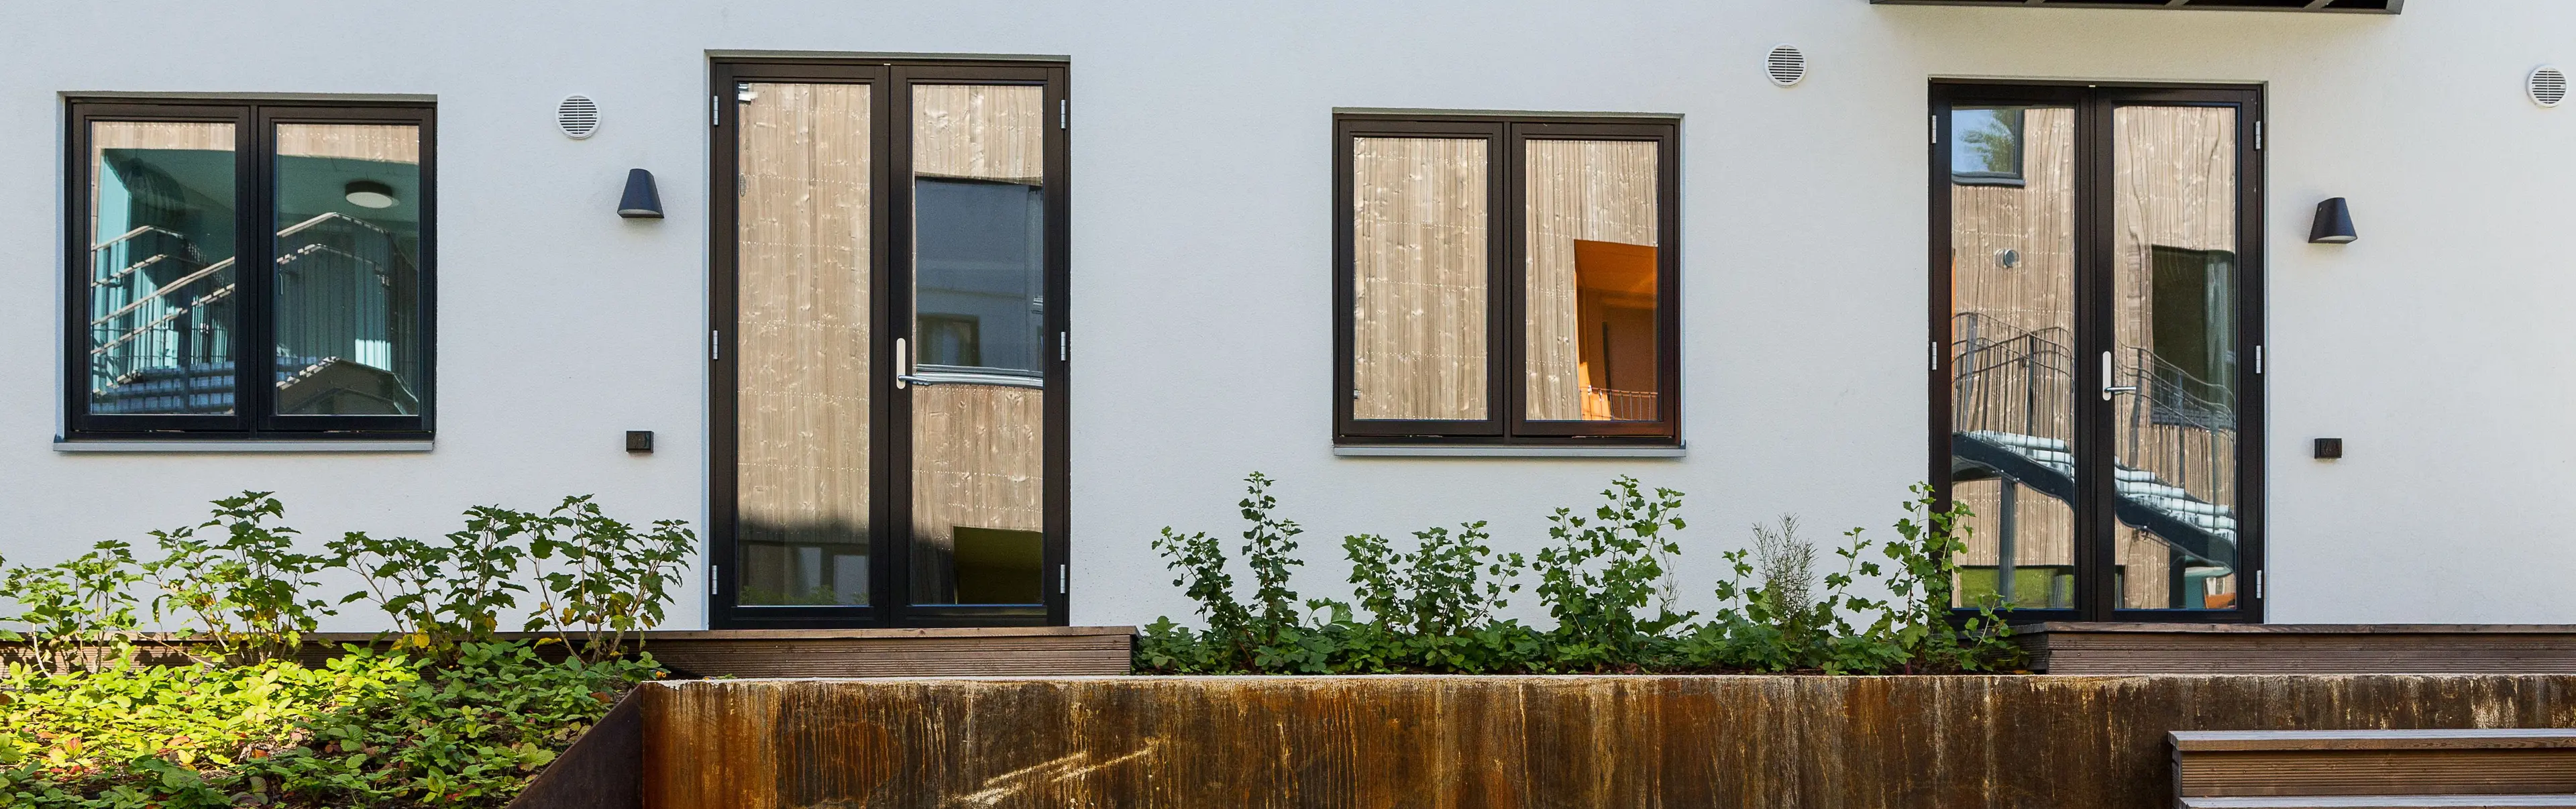 husfasade med to vinduer og to doble terrassedører i glass